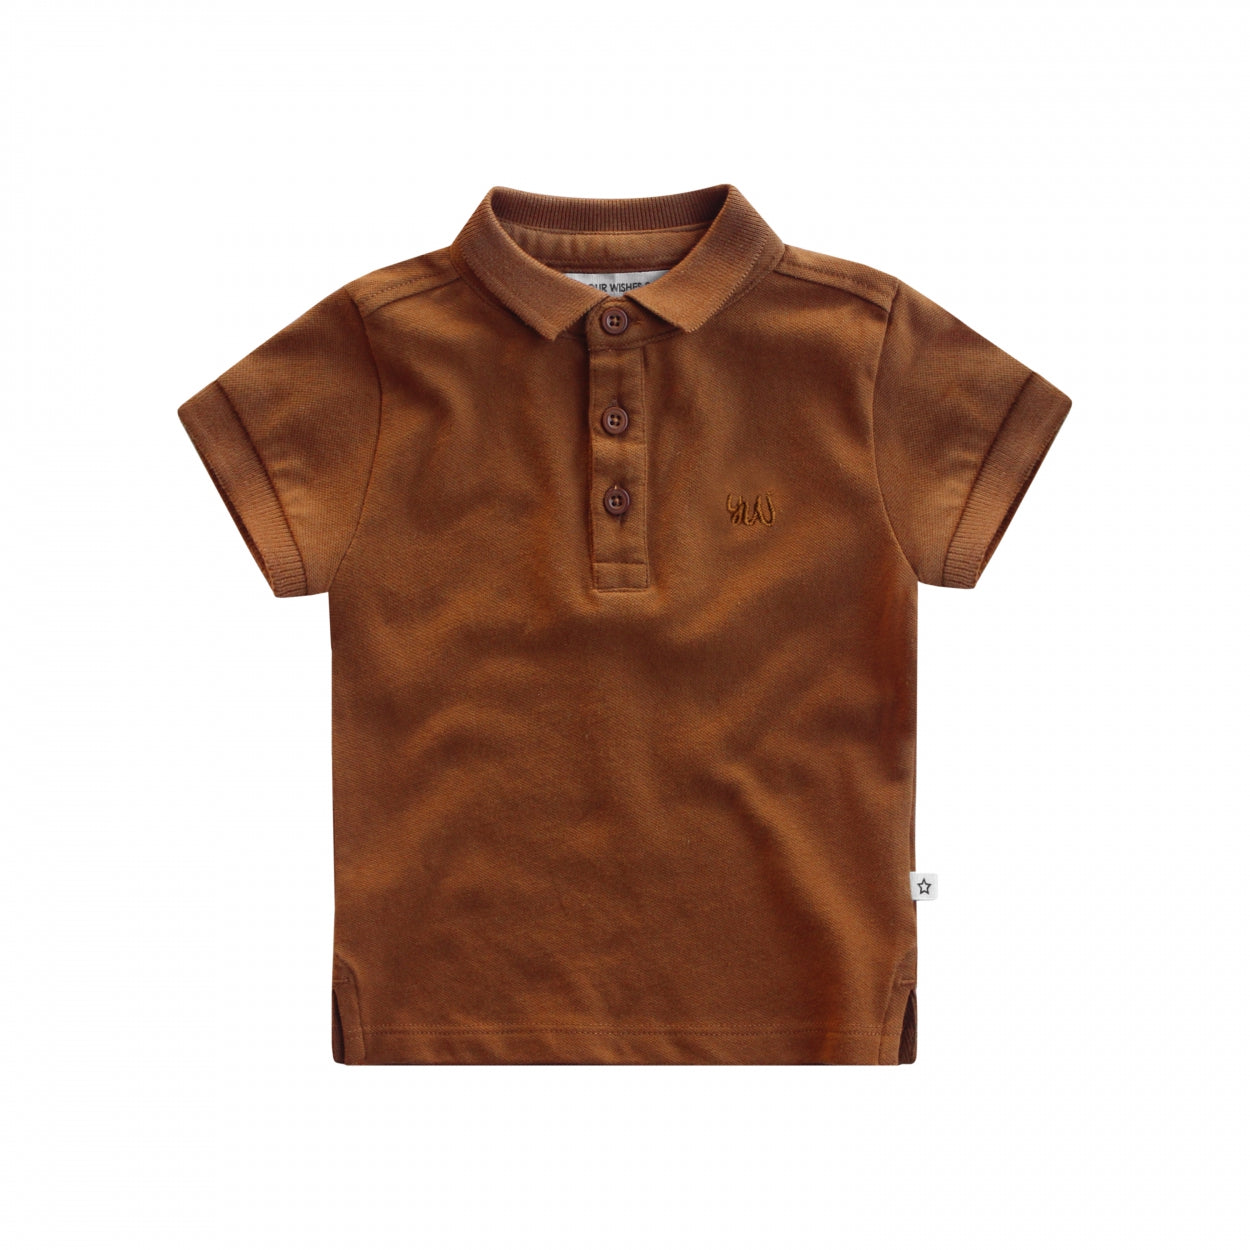 Jongens T-Shirt Solid | Djamie van Your Wishes in de kleur Glazed Ginger in maat 92.